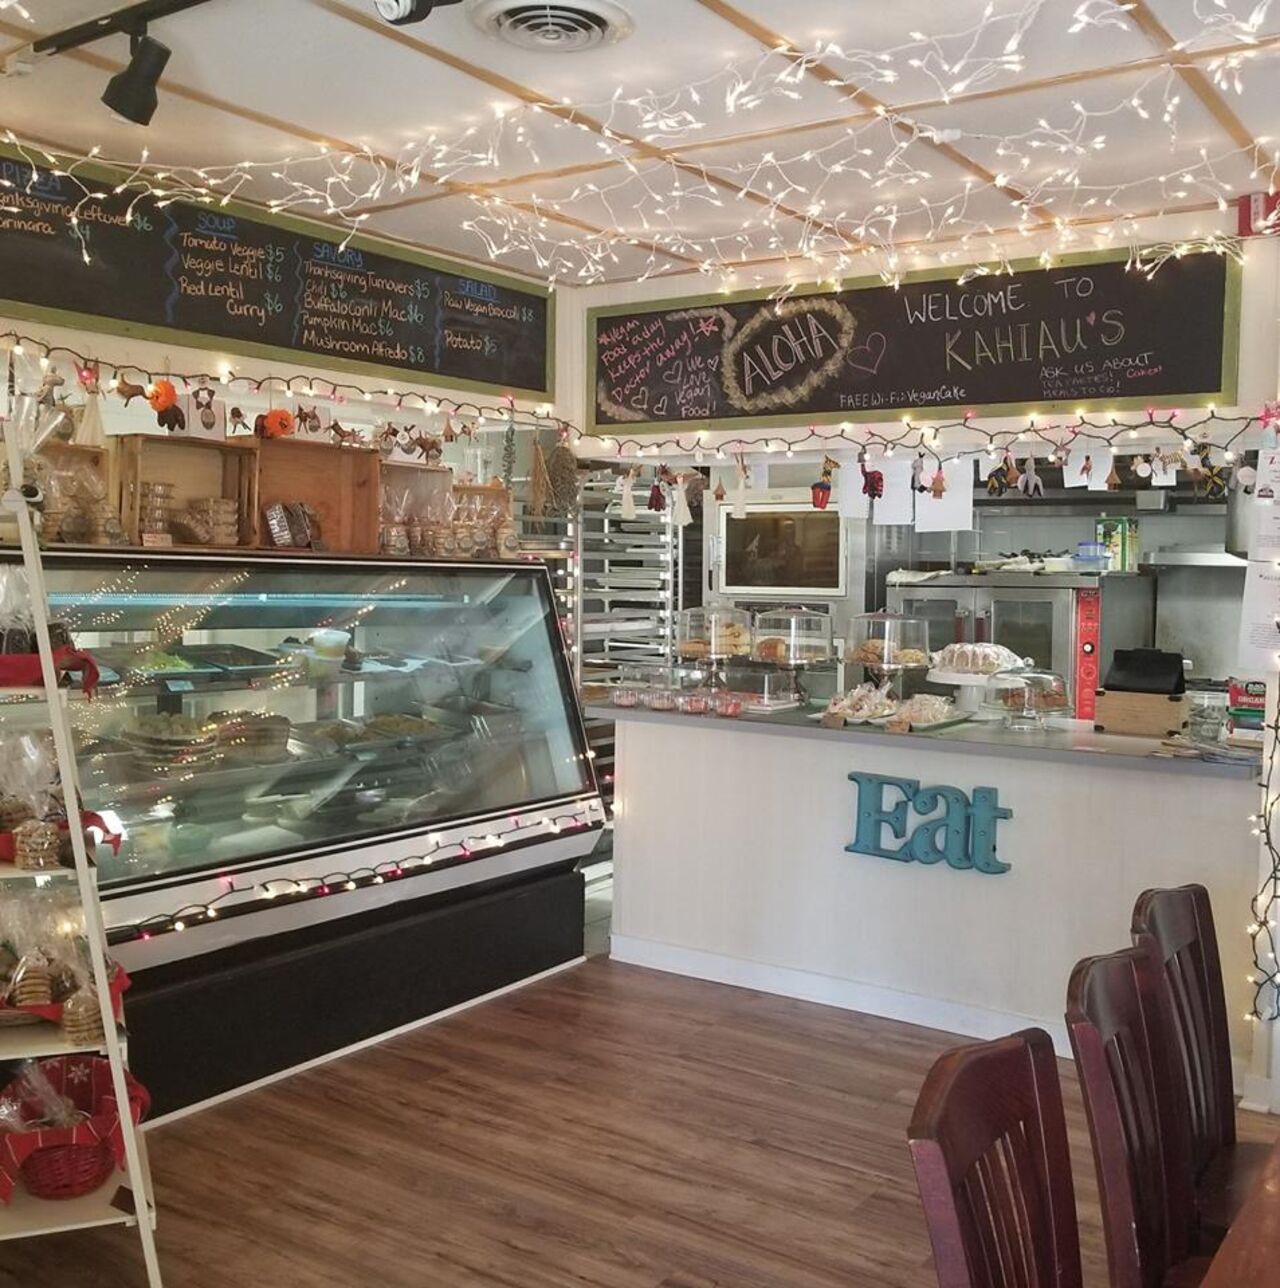 A photo of Kahiau's Bakery & Cafe